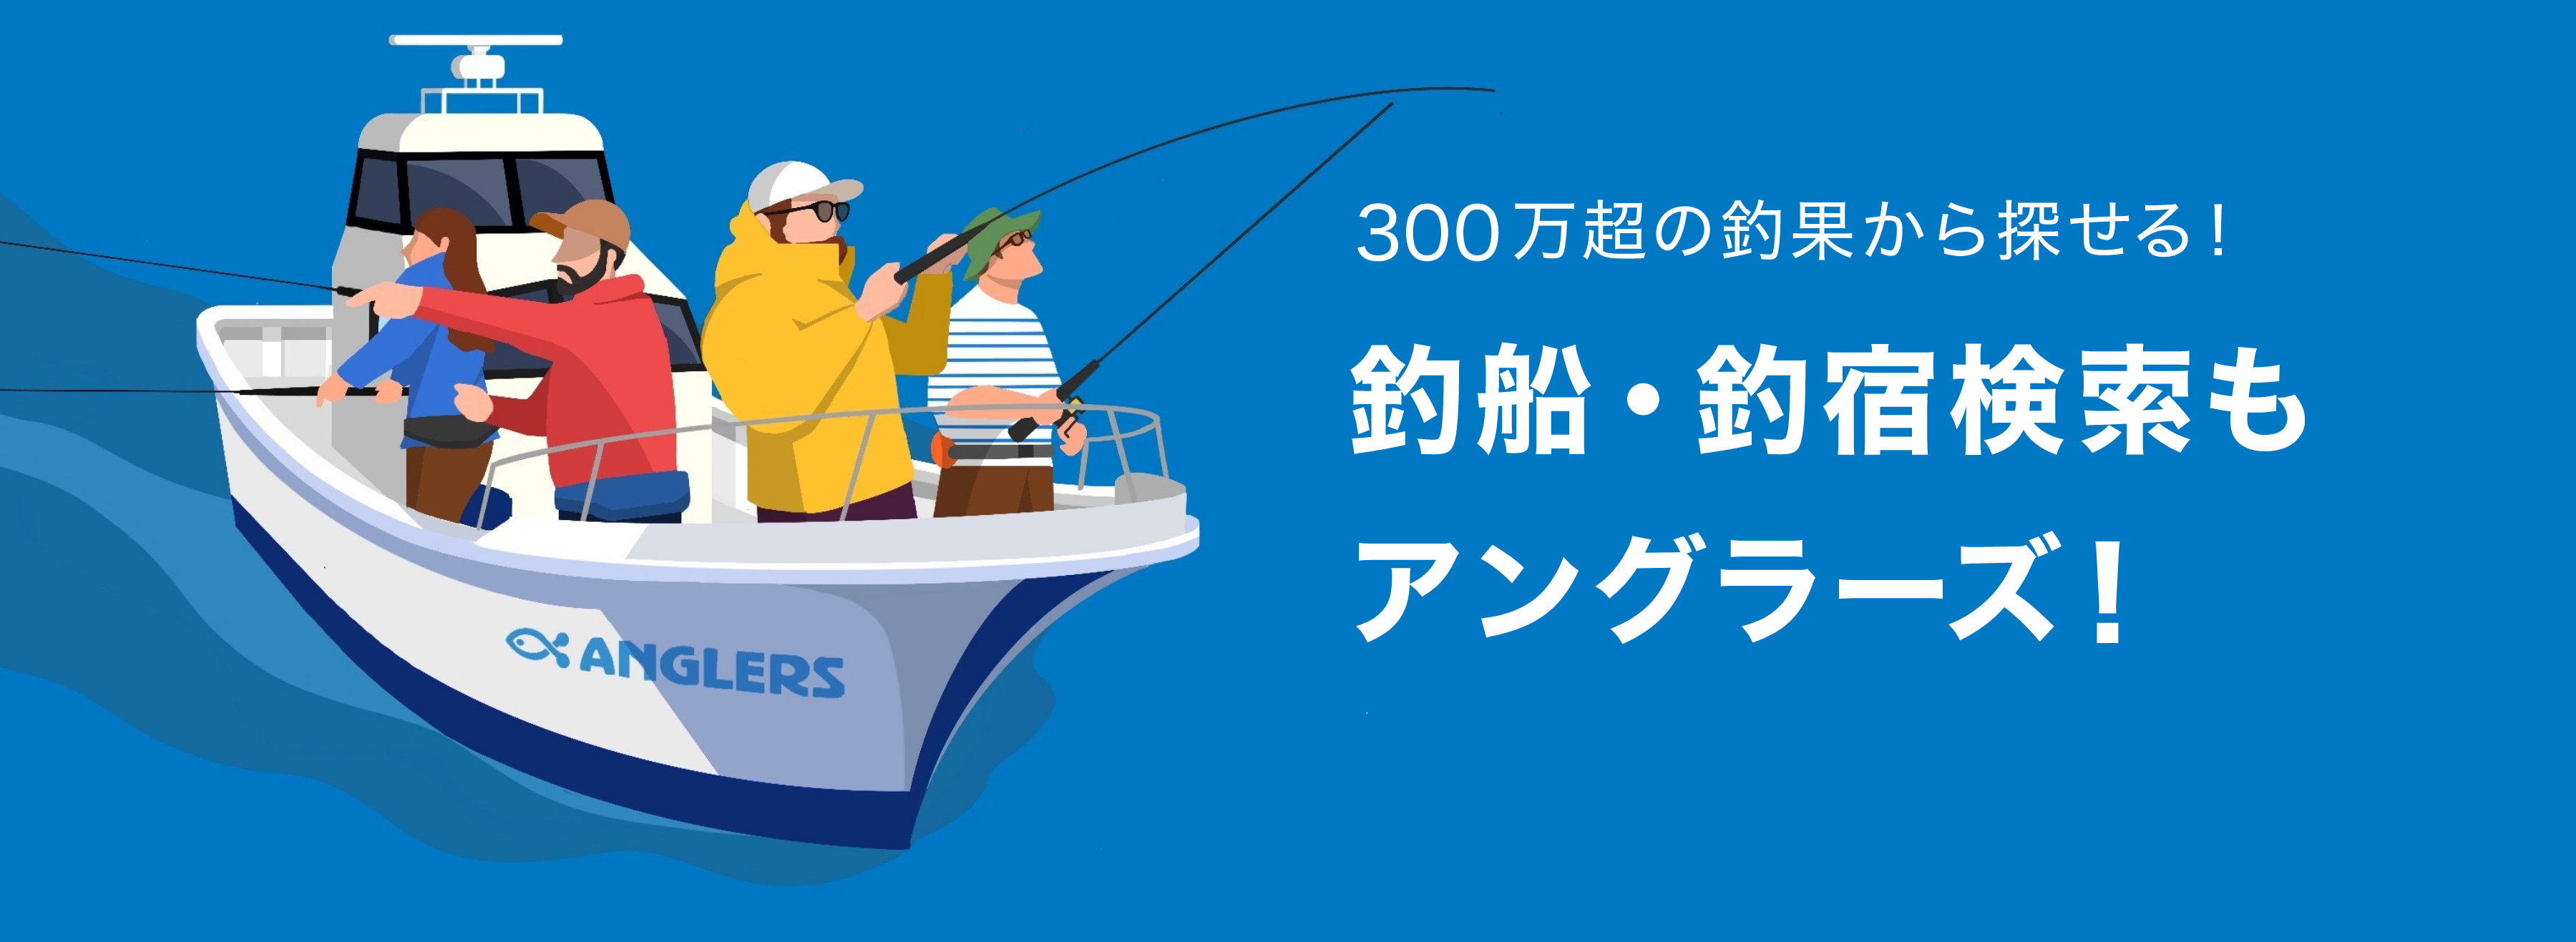 釣船 船宿情報 22年最新 アングラーズ 釣果300万件の魚釣り情報サイト